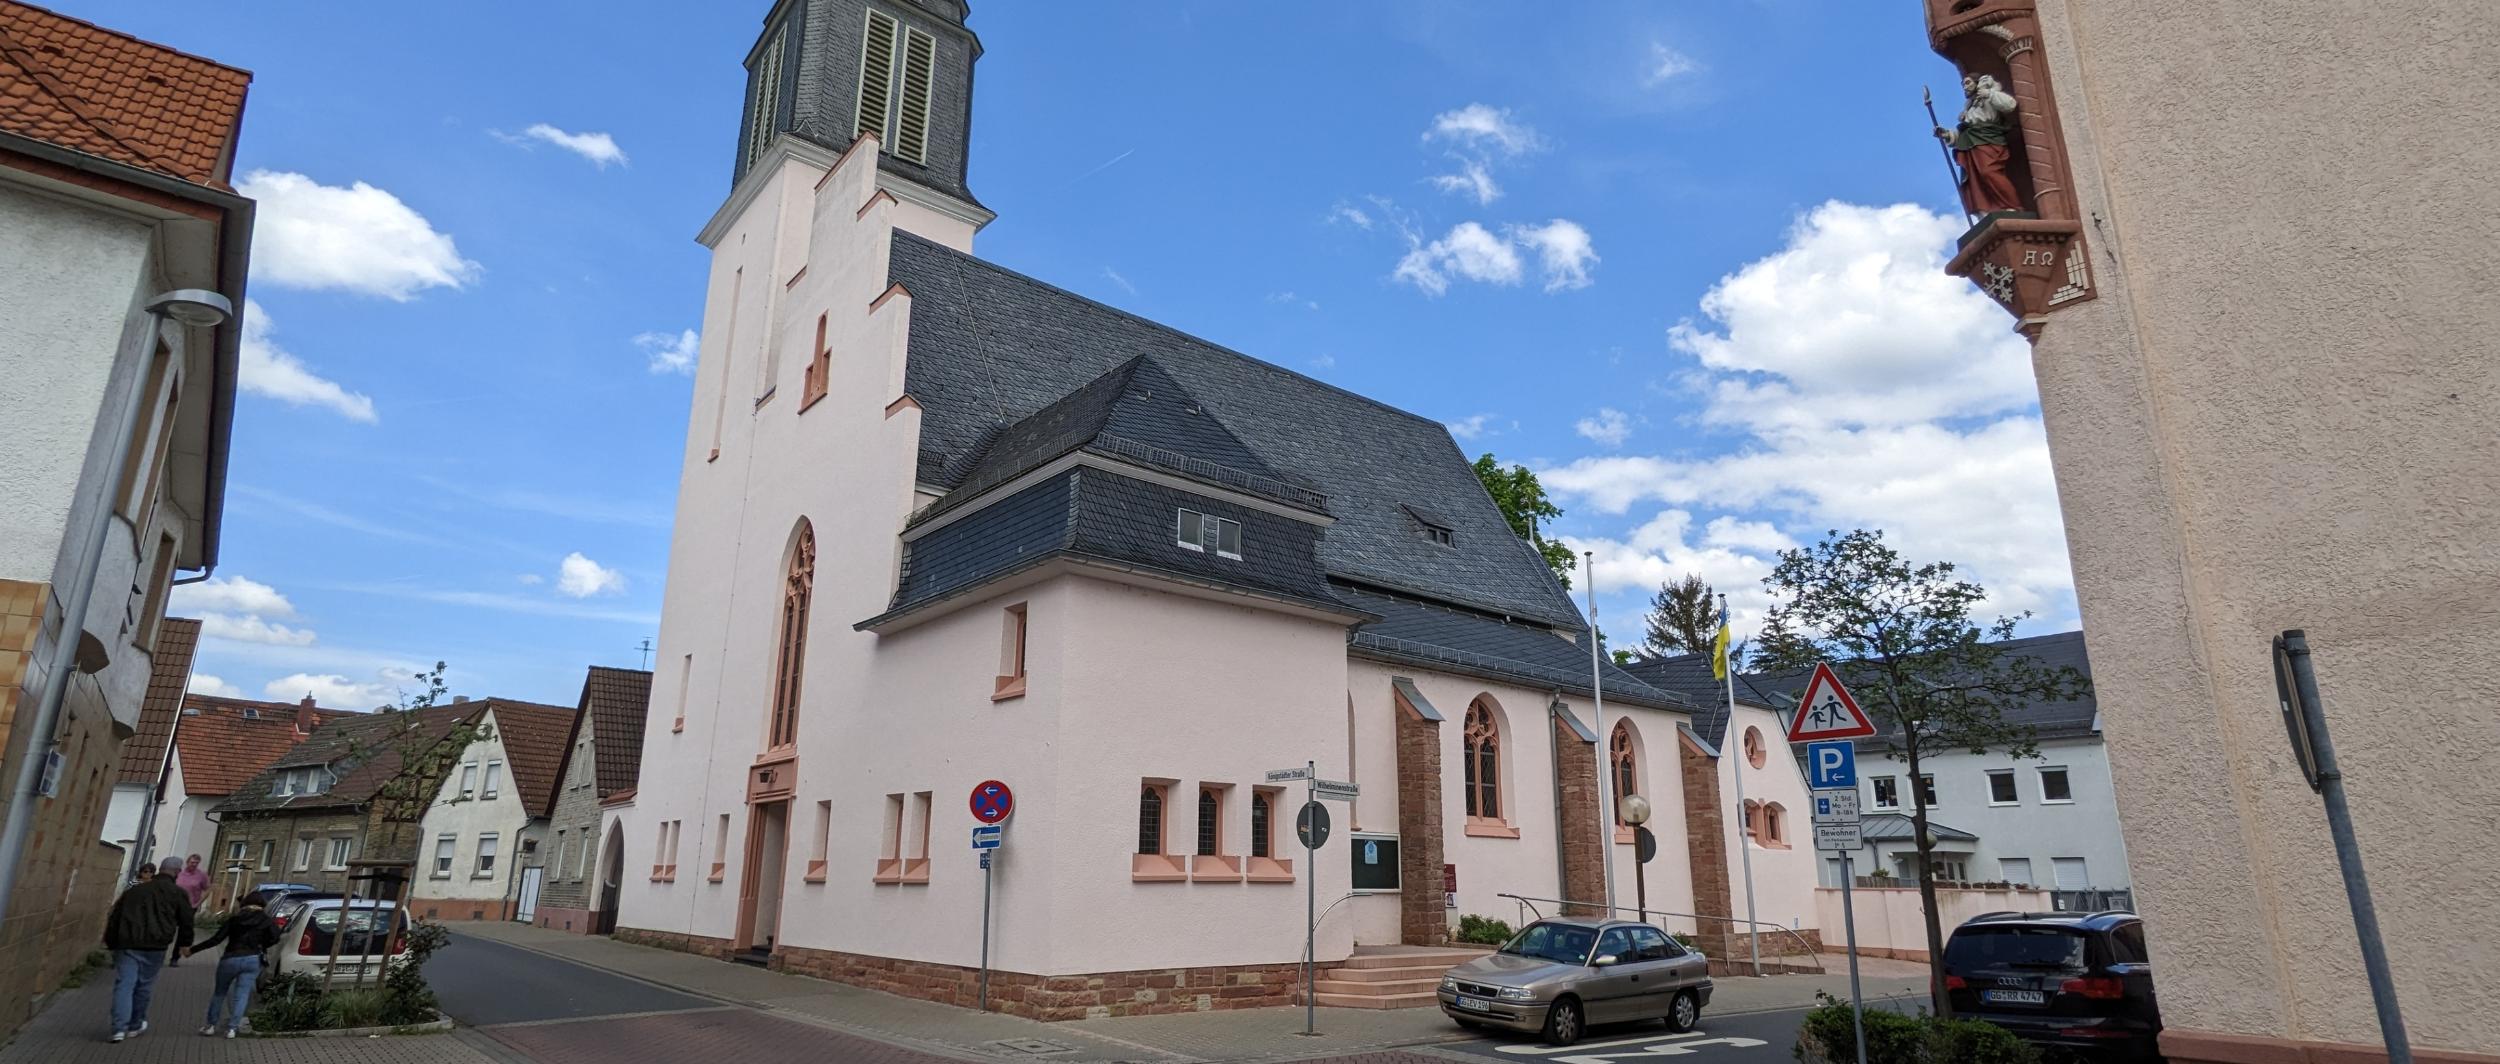 Kirche St. Georg Rüsselsheim